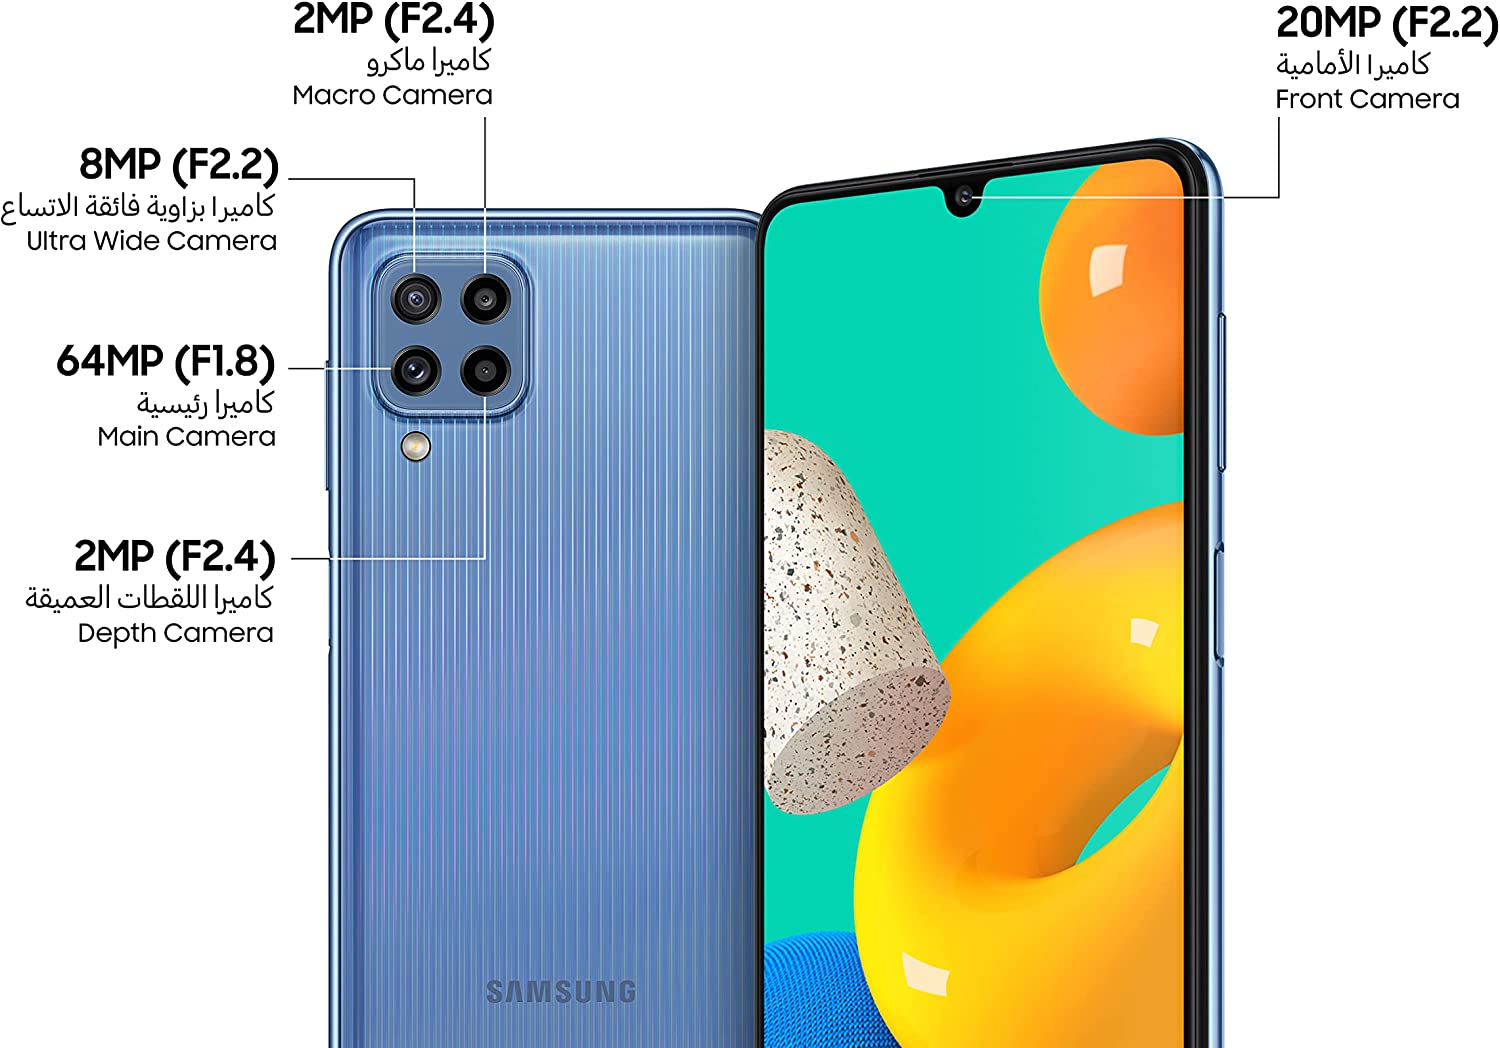 Samsung Galaxy M32 Lte Dual Sim Smartphone, 128Gb Storage And 6Gb Ram (Blue)